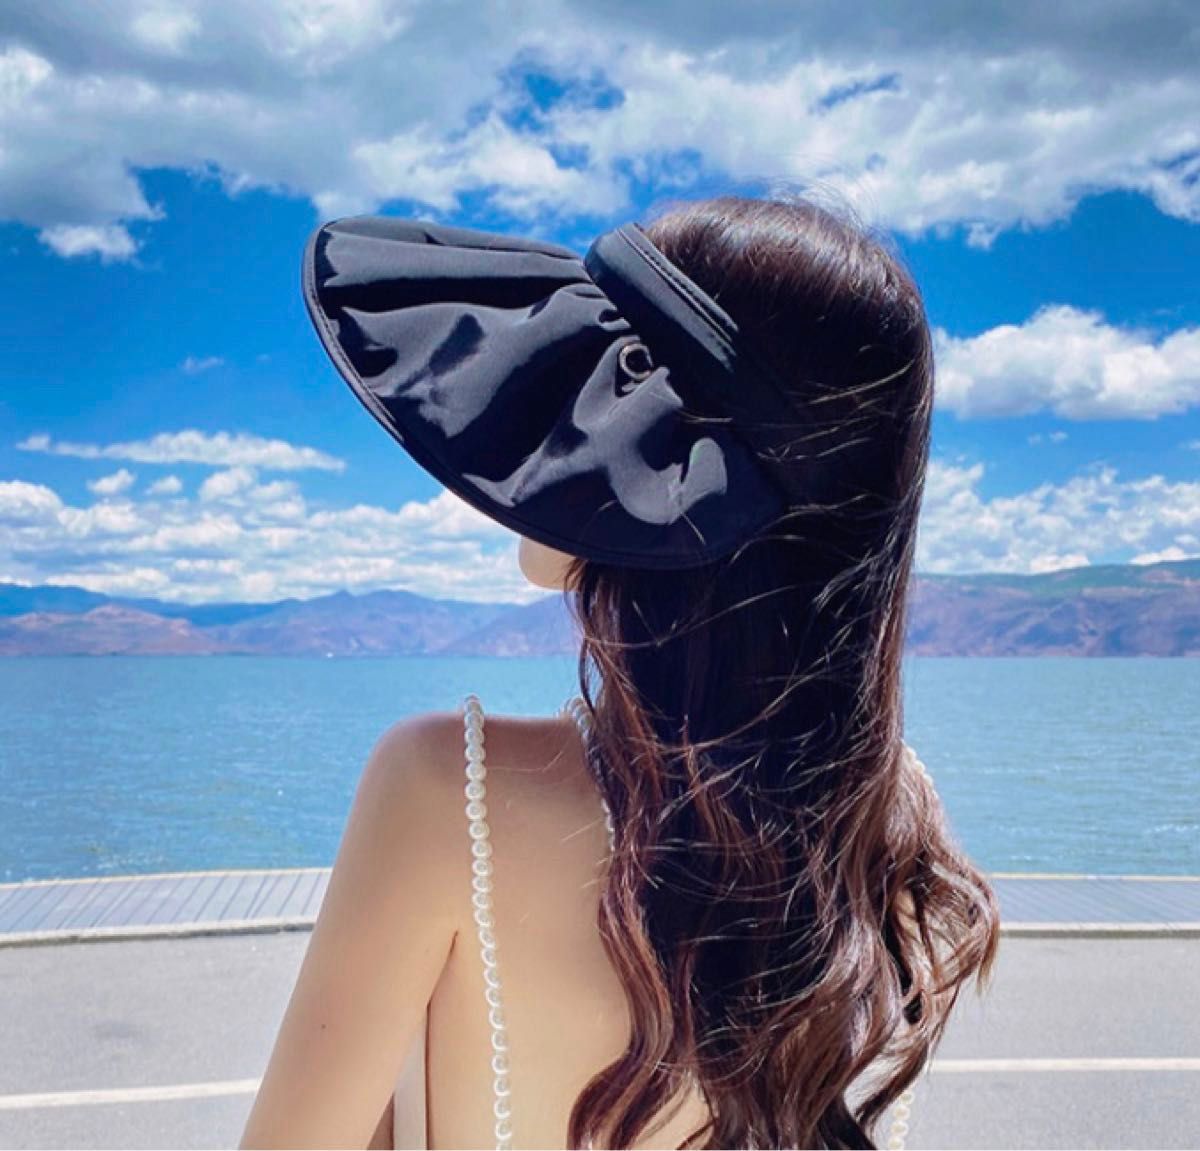 レディース帽子 UVカット 帽子 サンバイザー おしゃれ 涼しい 軽量 柔らかい オシャレ 旅行 海 便利 つば広 つば広帽子